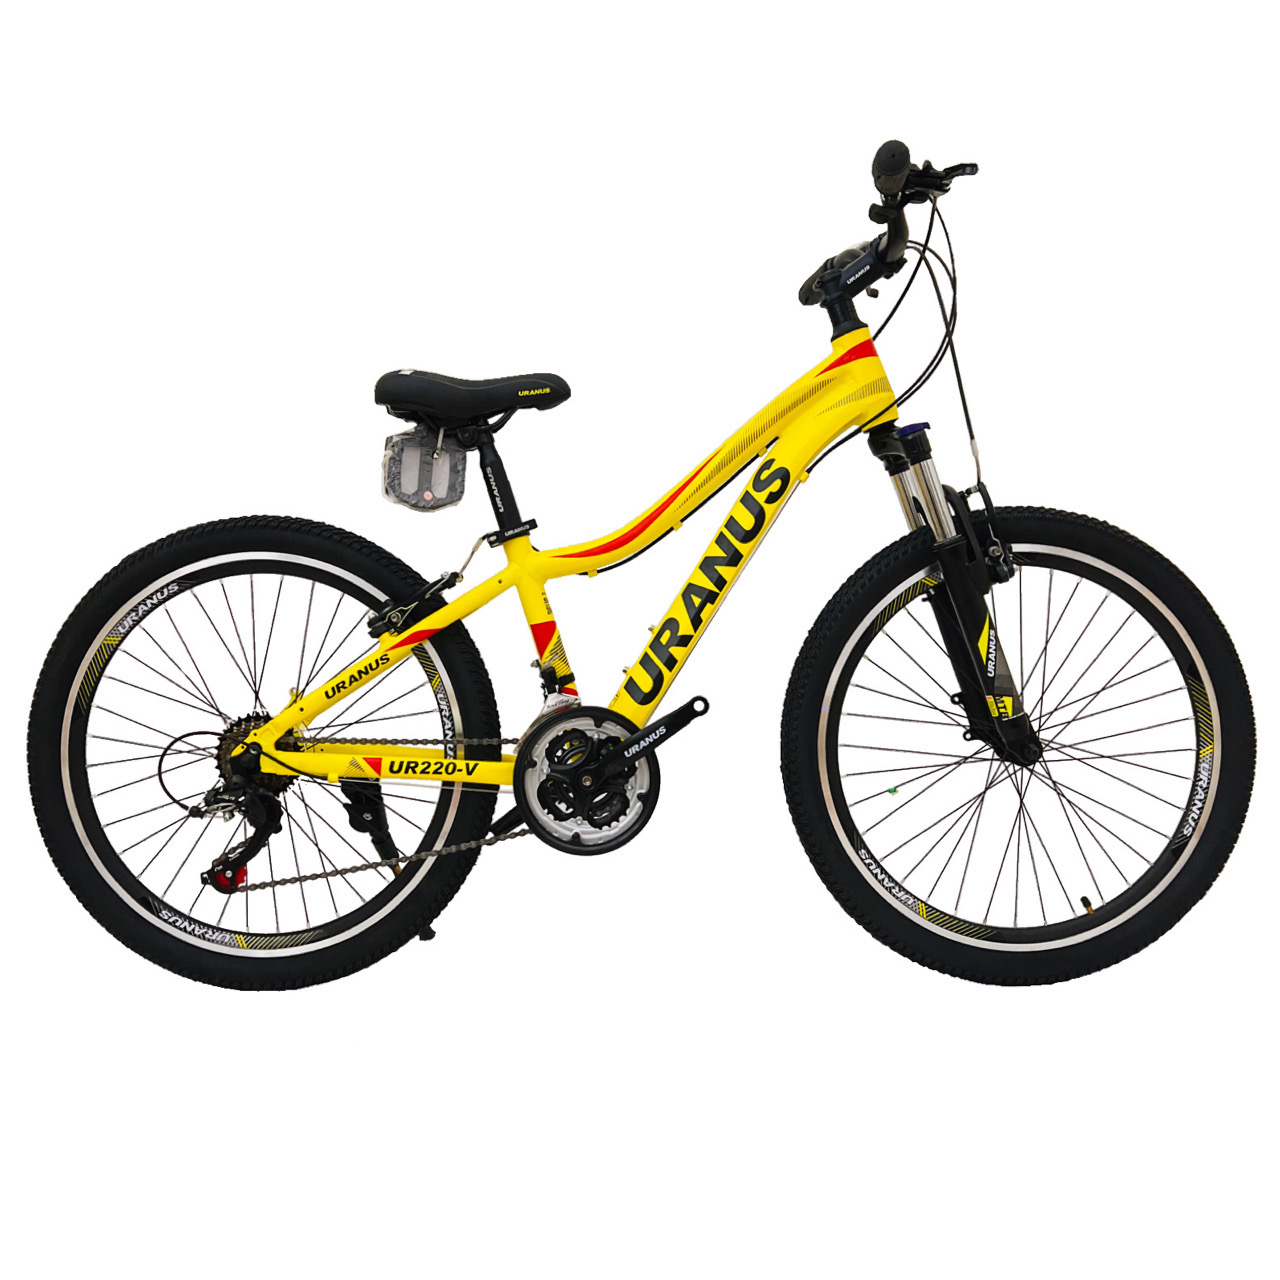 نکته خرید - قیمت روز دوچرخه کوهستان اورانوس مدل UR220-V سایز 24 خرید